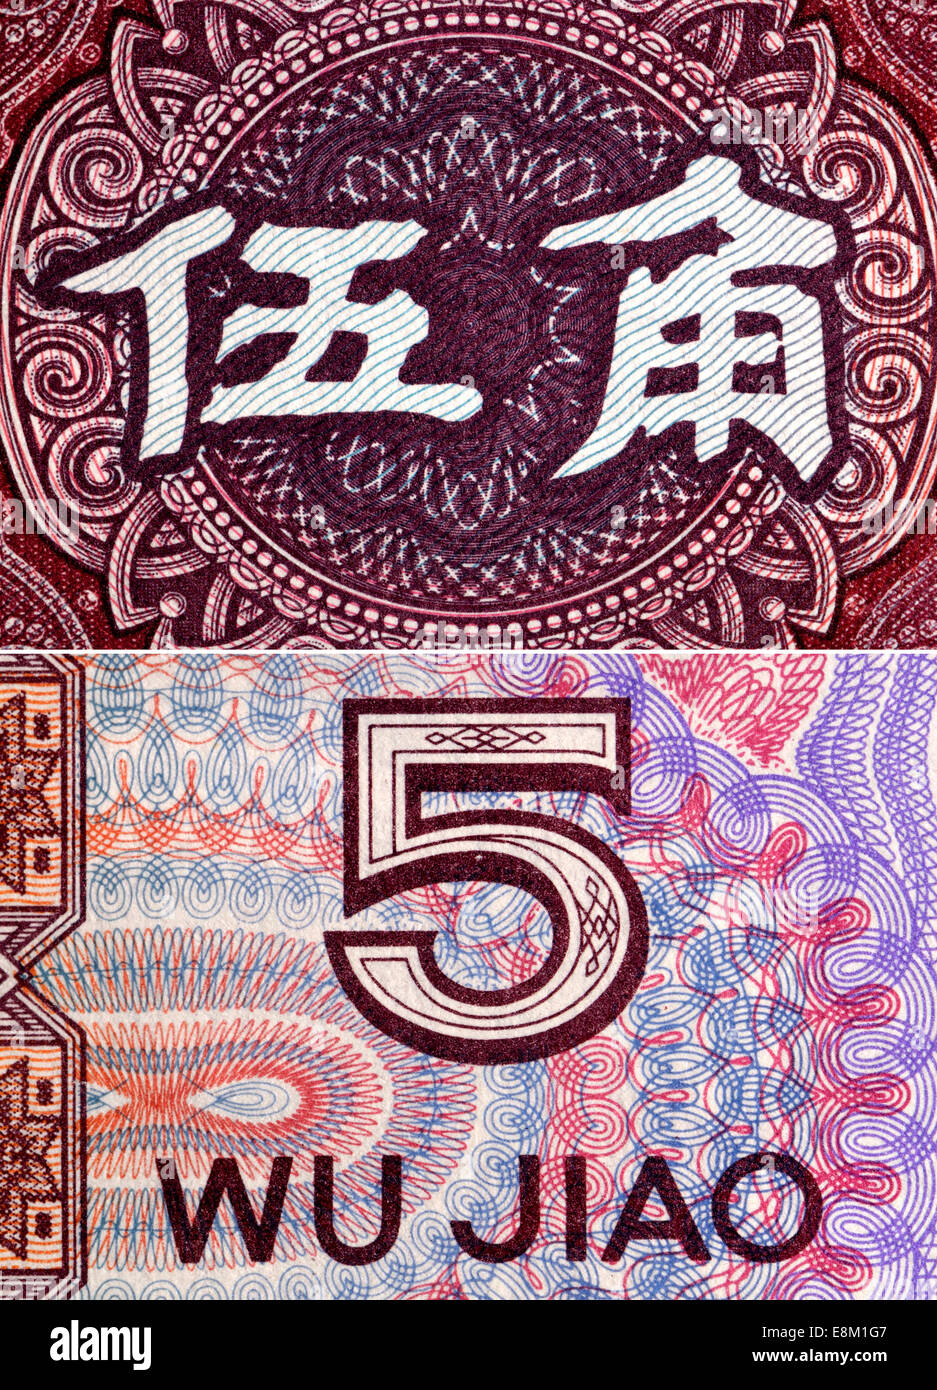 Ausschnitt aus einer chinesischen Banknote zeigt die Zeichen für "fünf Jiou" (Währungseinheit) Stockfoto